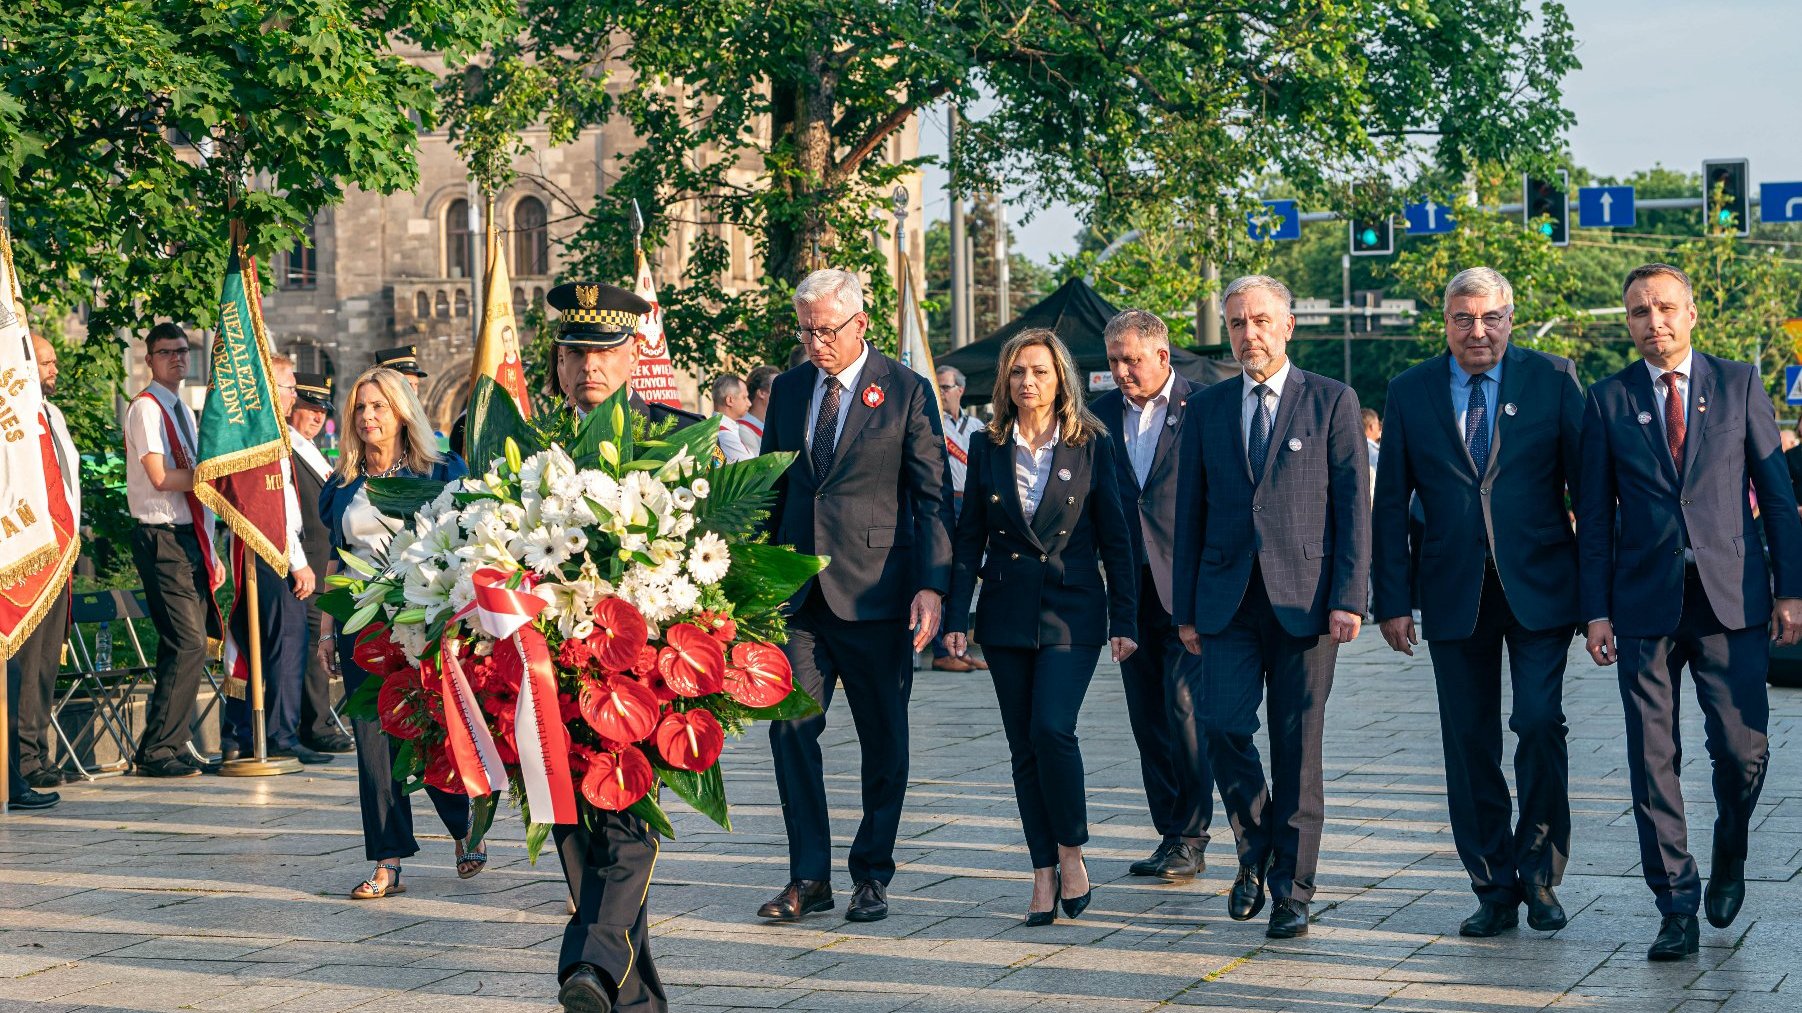 Na zdjęciu delegacja składająca kwiaty pod pomnikiem,na pierwszym planie strażnik miejski z wiązanką